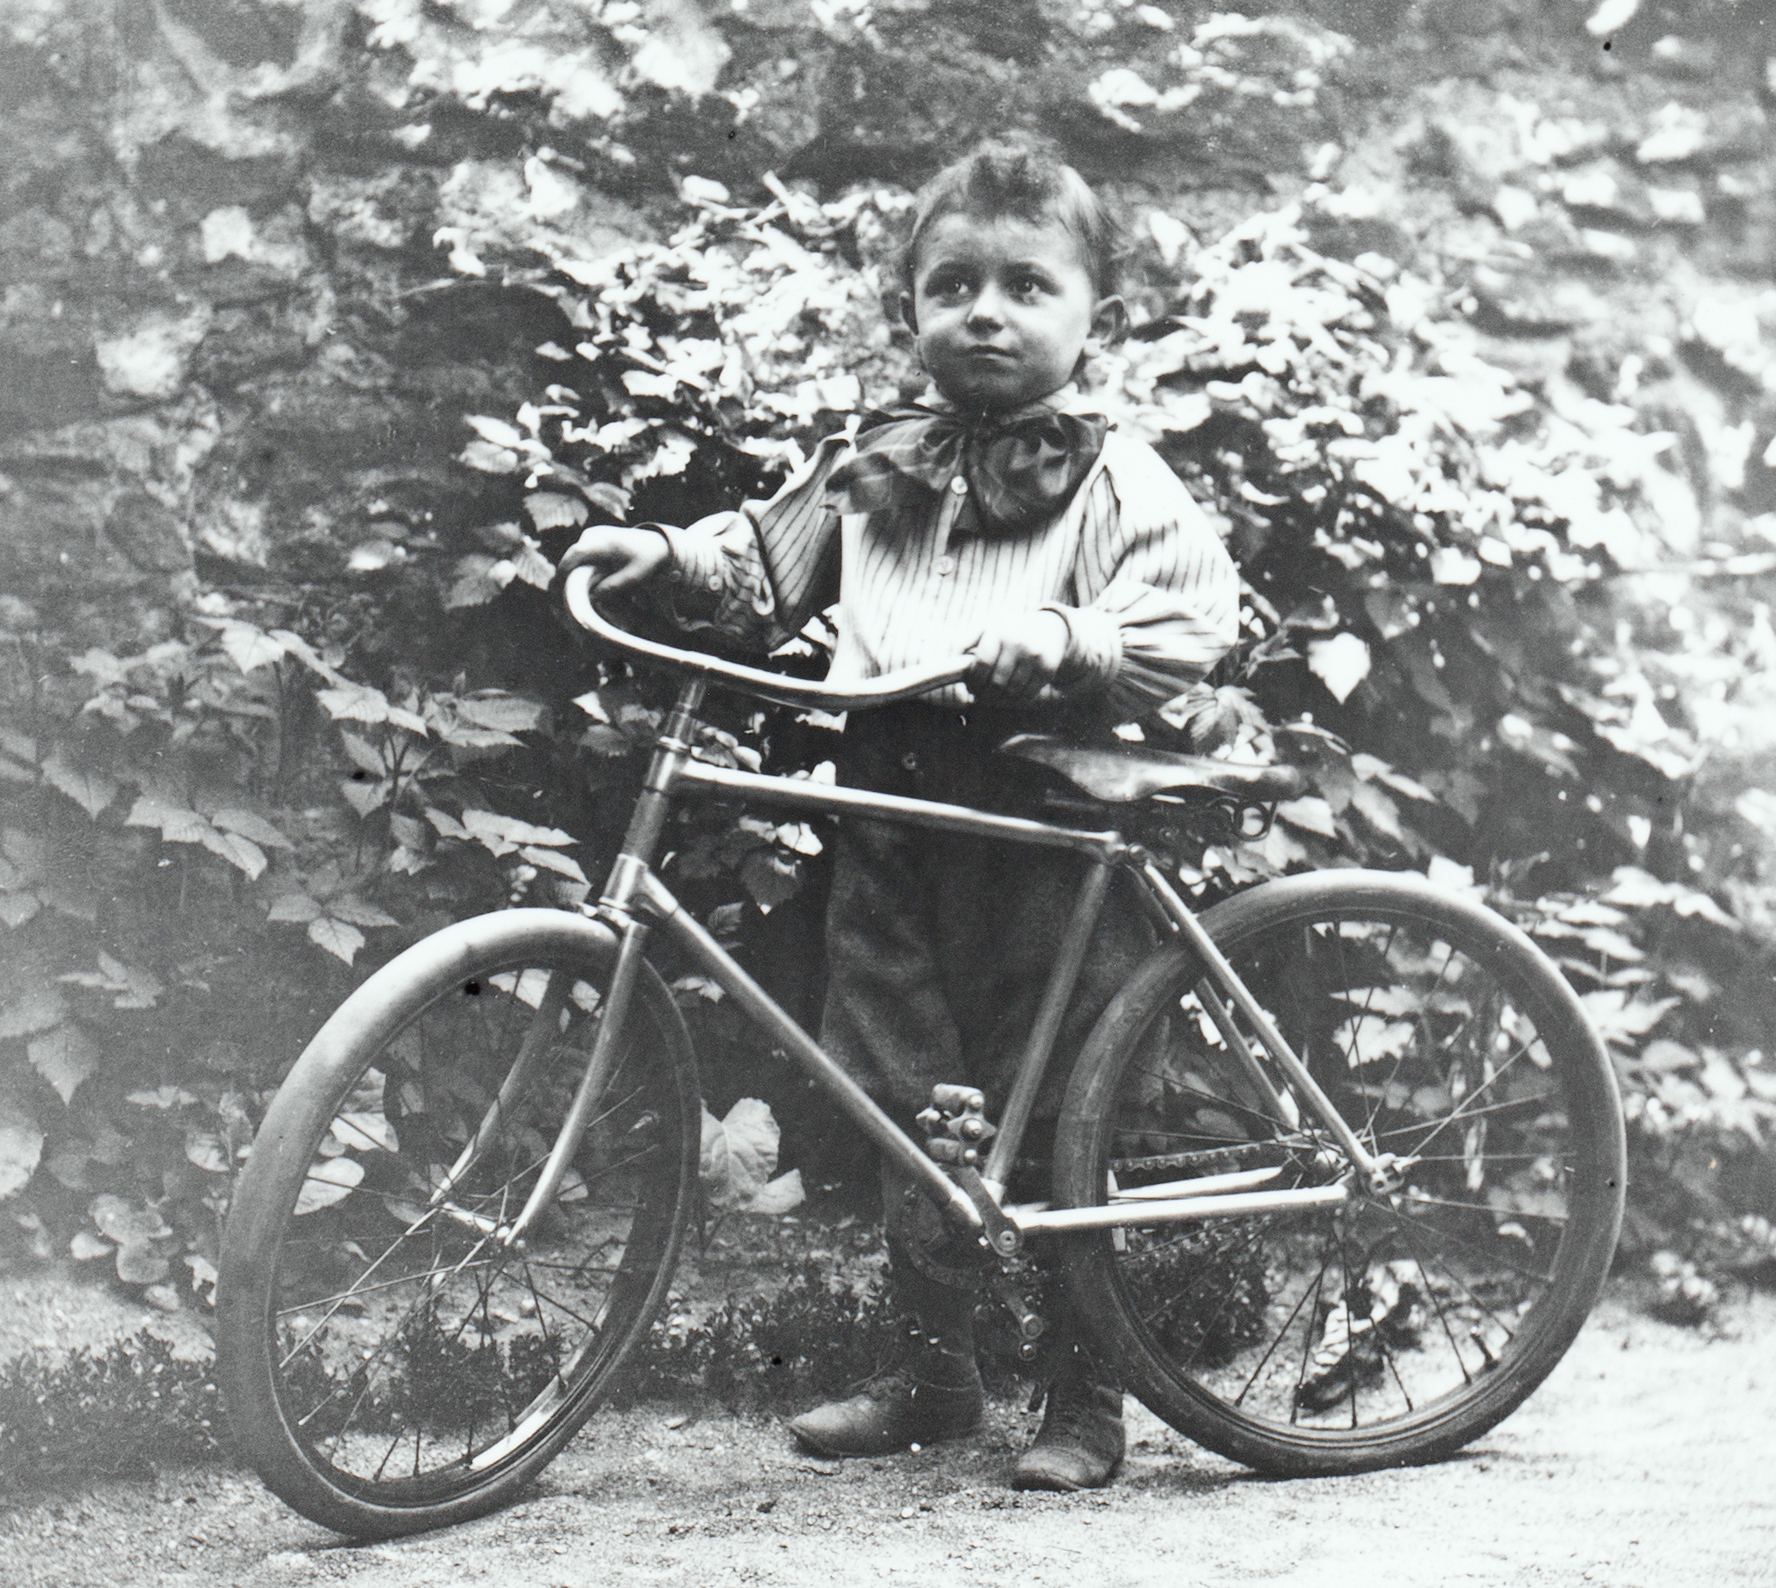 Archives des vélo garçon - Veloenfant